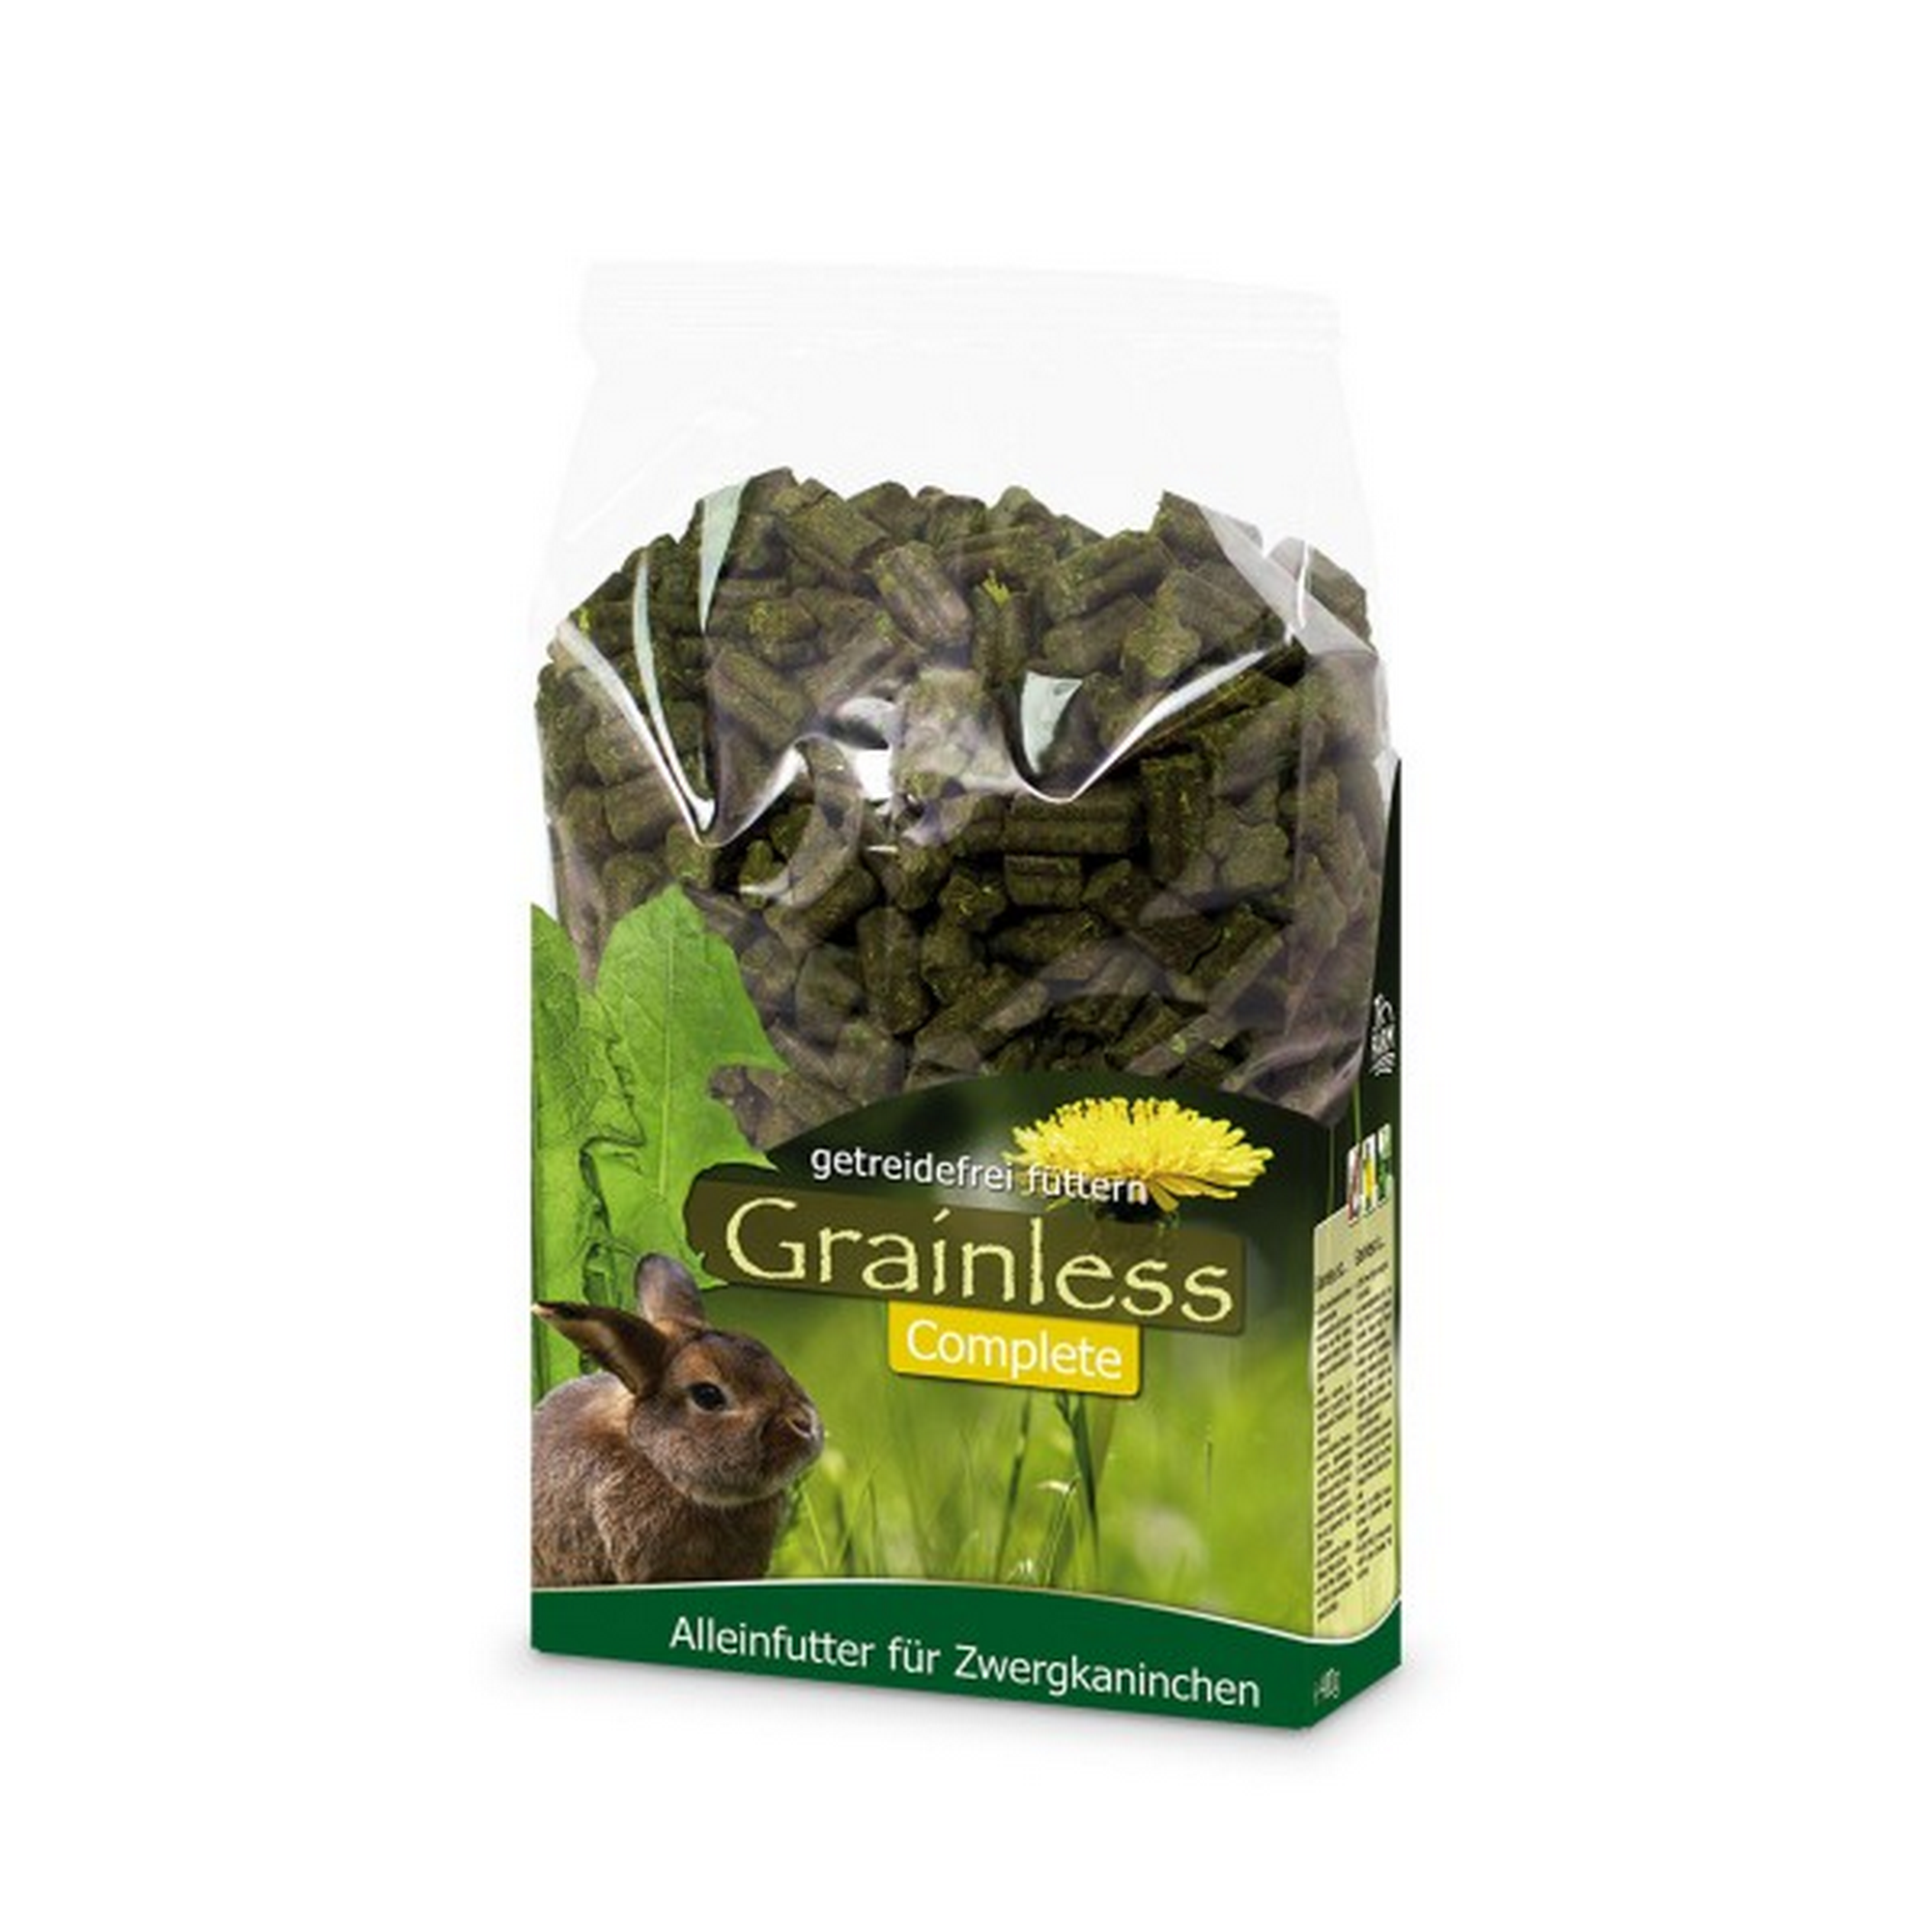 Kaninchenfutter 'Grainless Complete' für Zwergkaninchen 3,5 kg + product picture